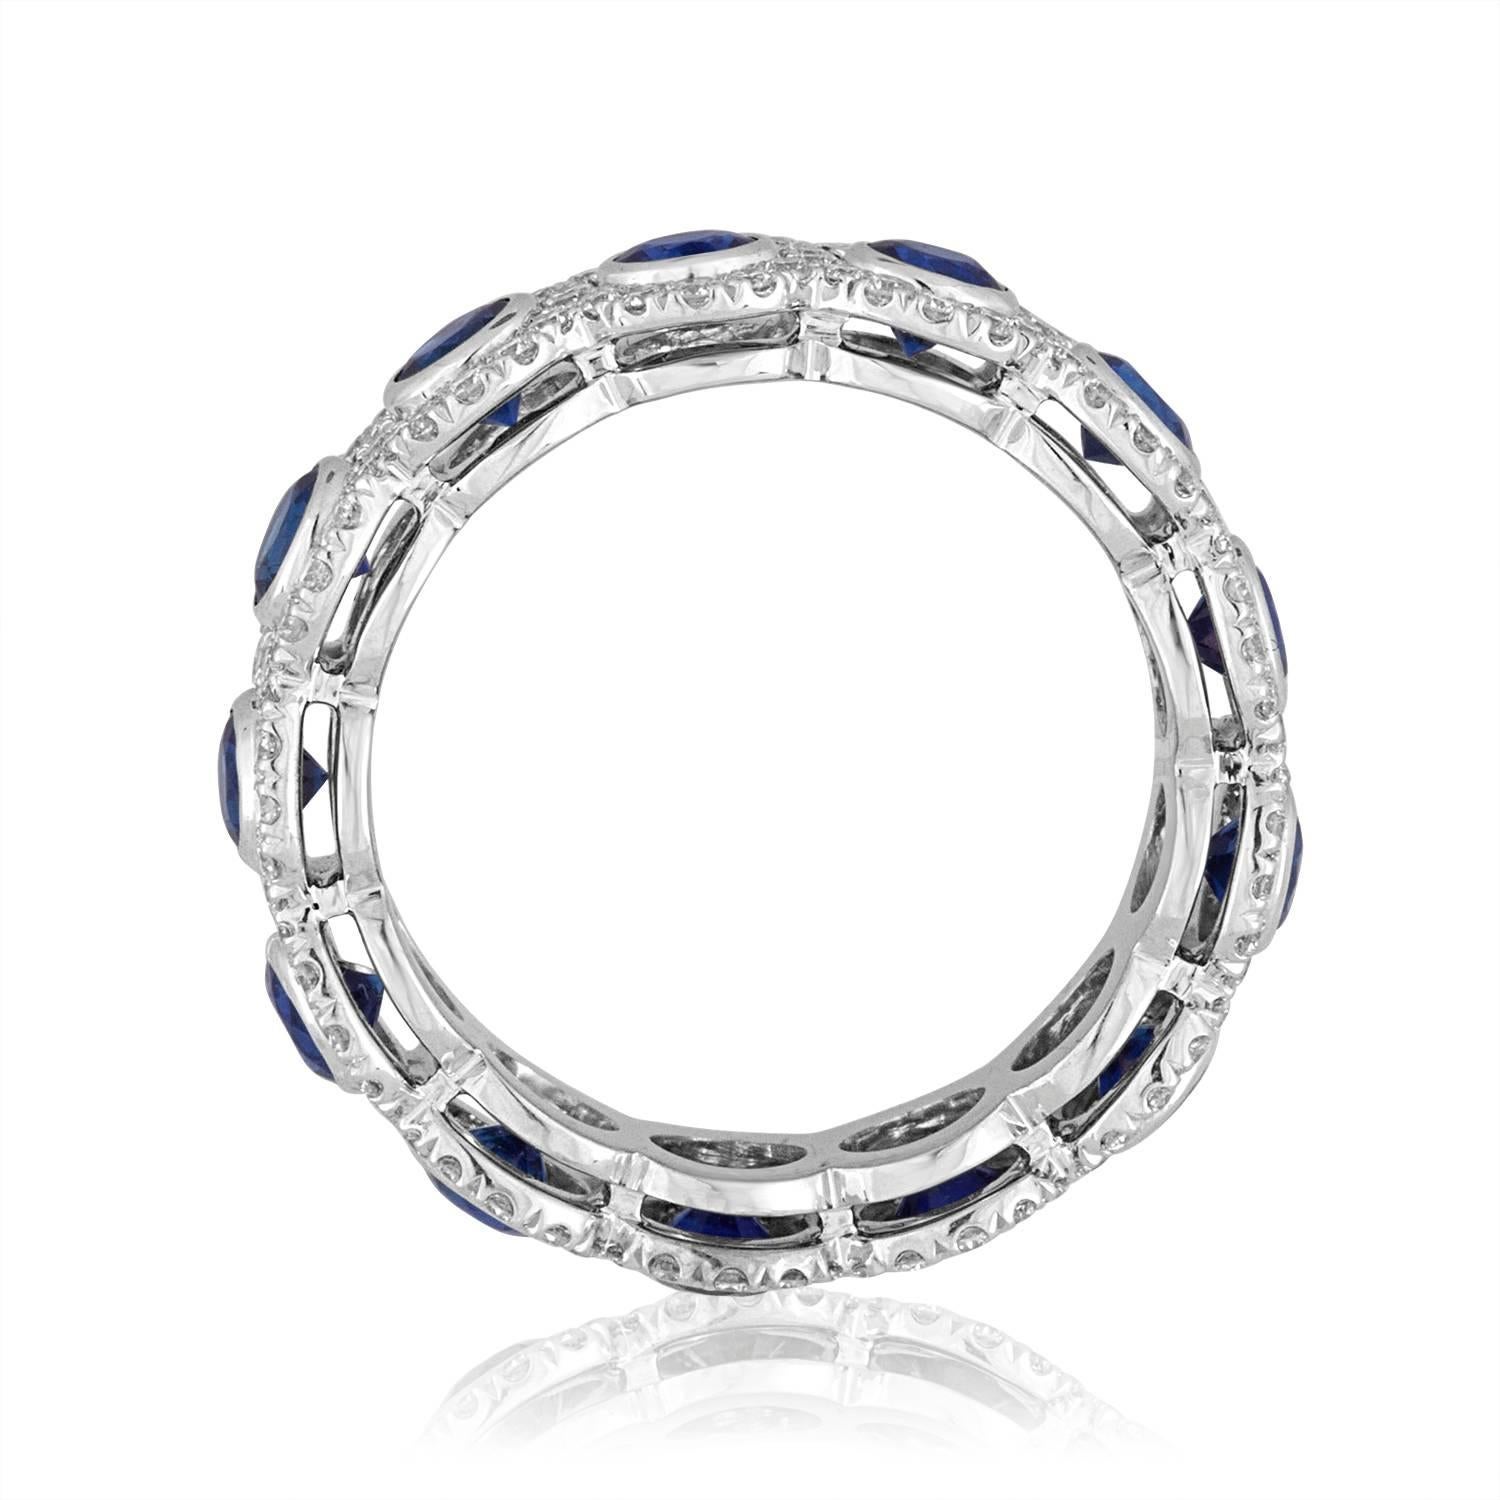 Ganz besonderes Ewigkeitsarmband
Dies ist ein Band mit blauem Saphir und Diamanten.
Der Ring ist aus 18K Weißgold.
Der Ring hat 3.09Ct in Natural Blue Sapphires.
Es sind 1.03Ct in Diamanten F VS
Der Ring ist eine Größe 7, nicht sizable.
Der Ring ist